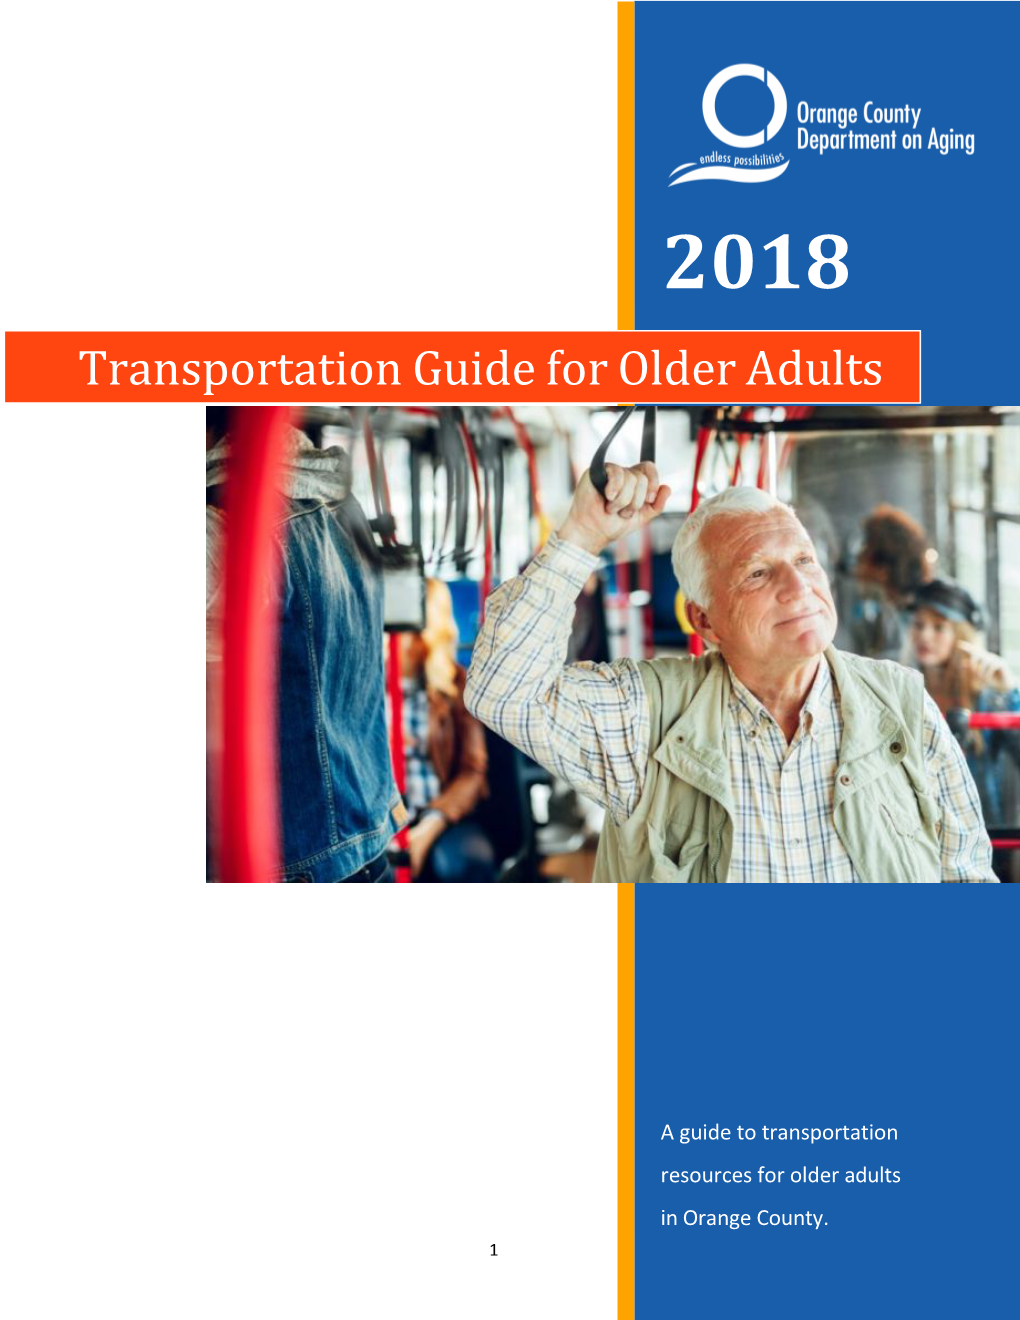 Transportation Guide for Older Adults